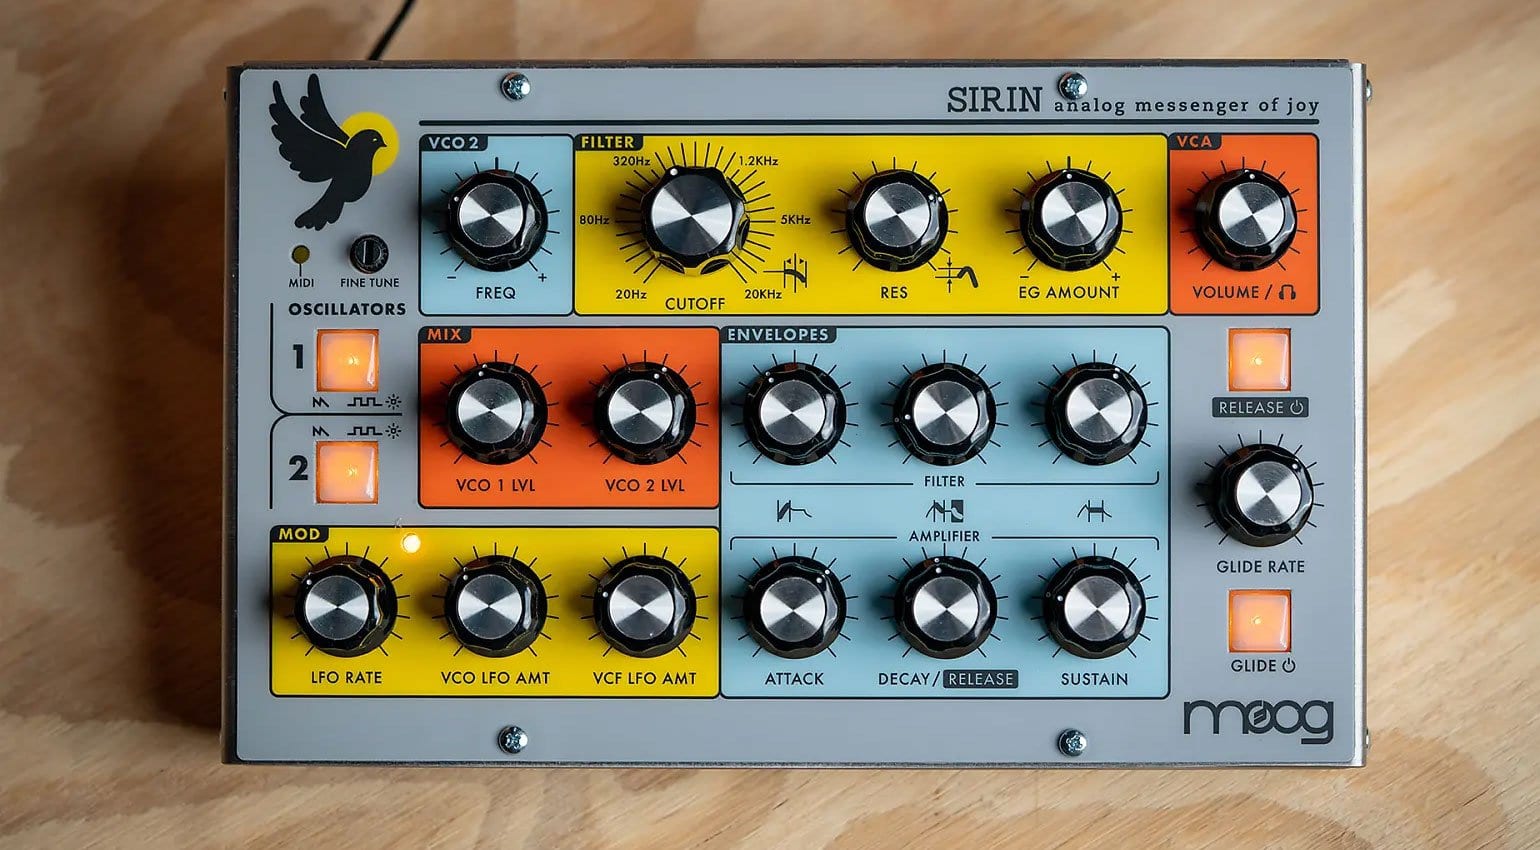 NAMM 2019: Moog Sirin limited edition joyful synthesizer based on 